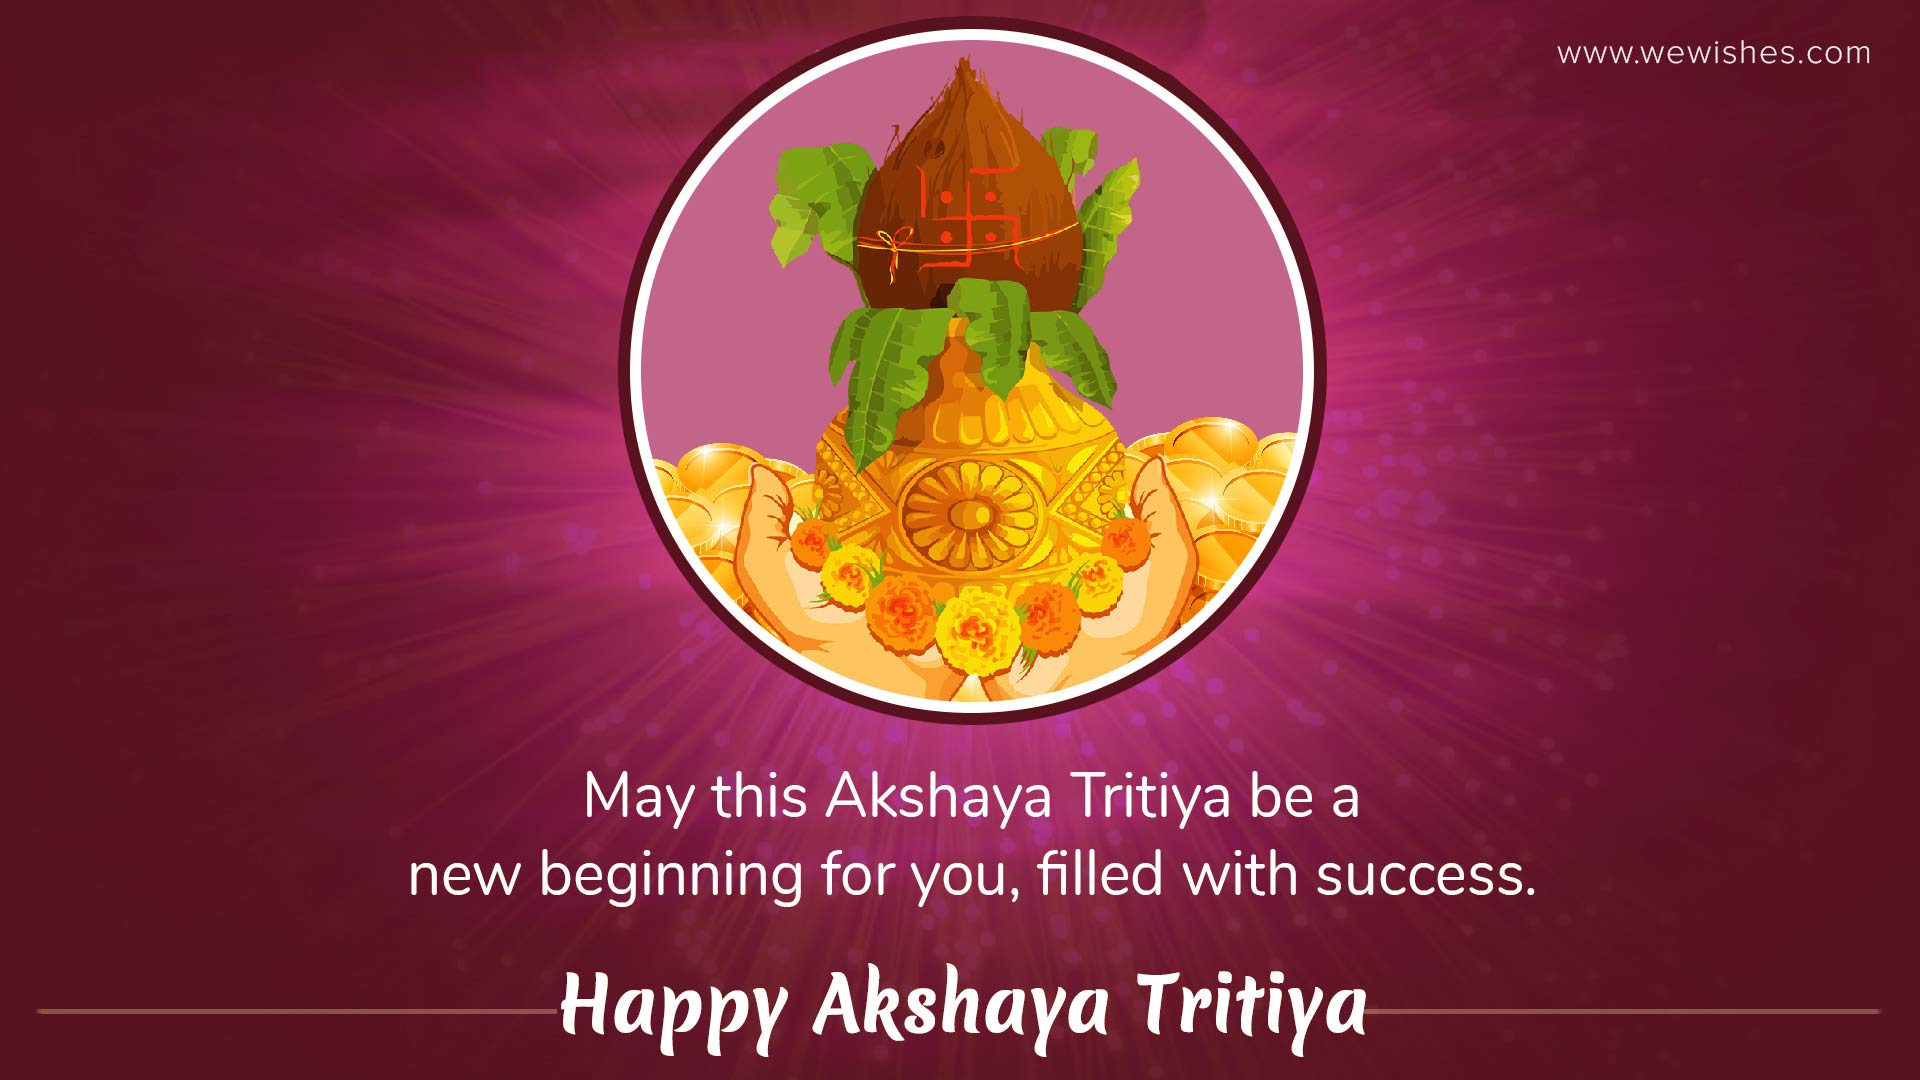 Akshaya Tritiya Quotes 2020: Wishes, Messages, Image on Akha Teej